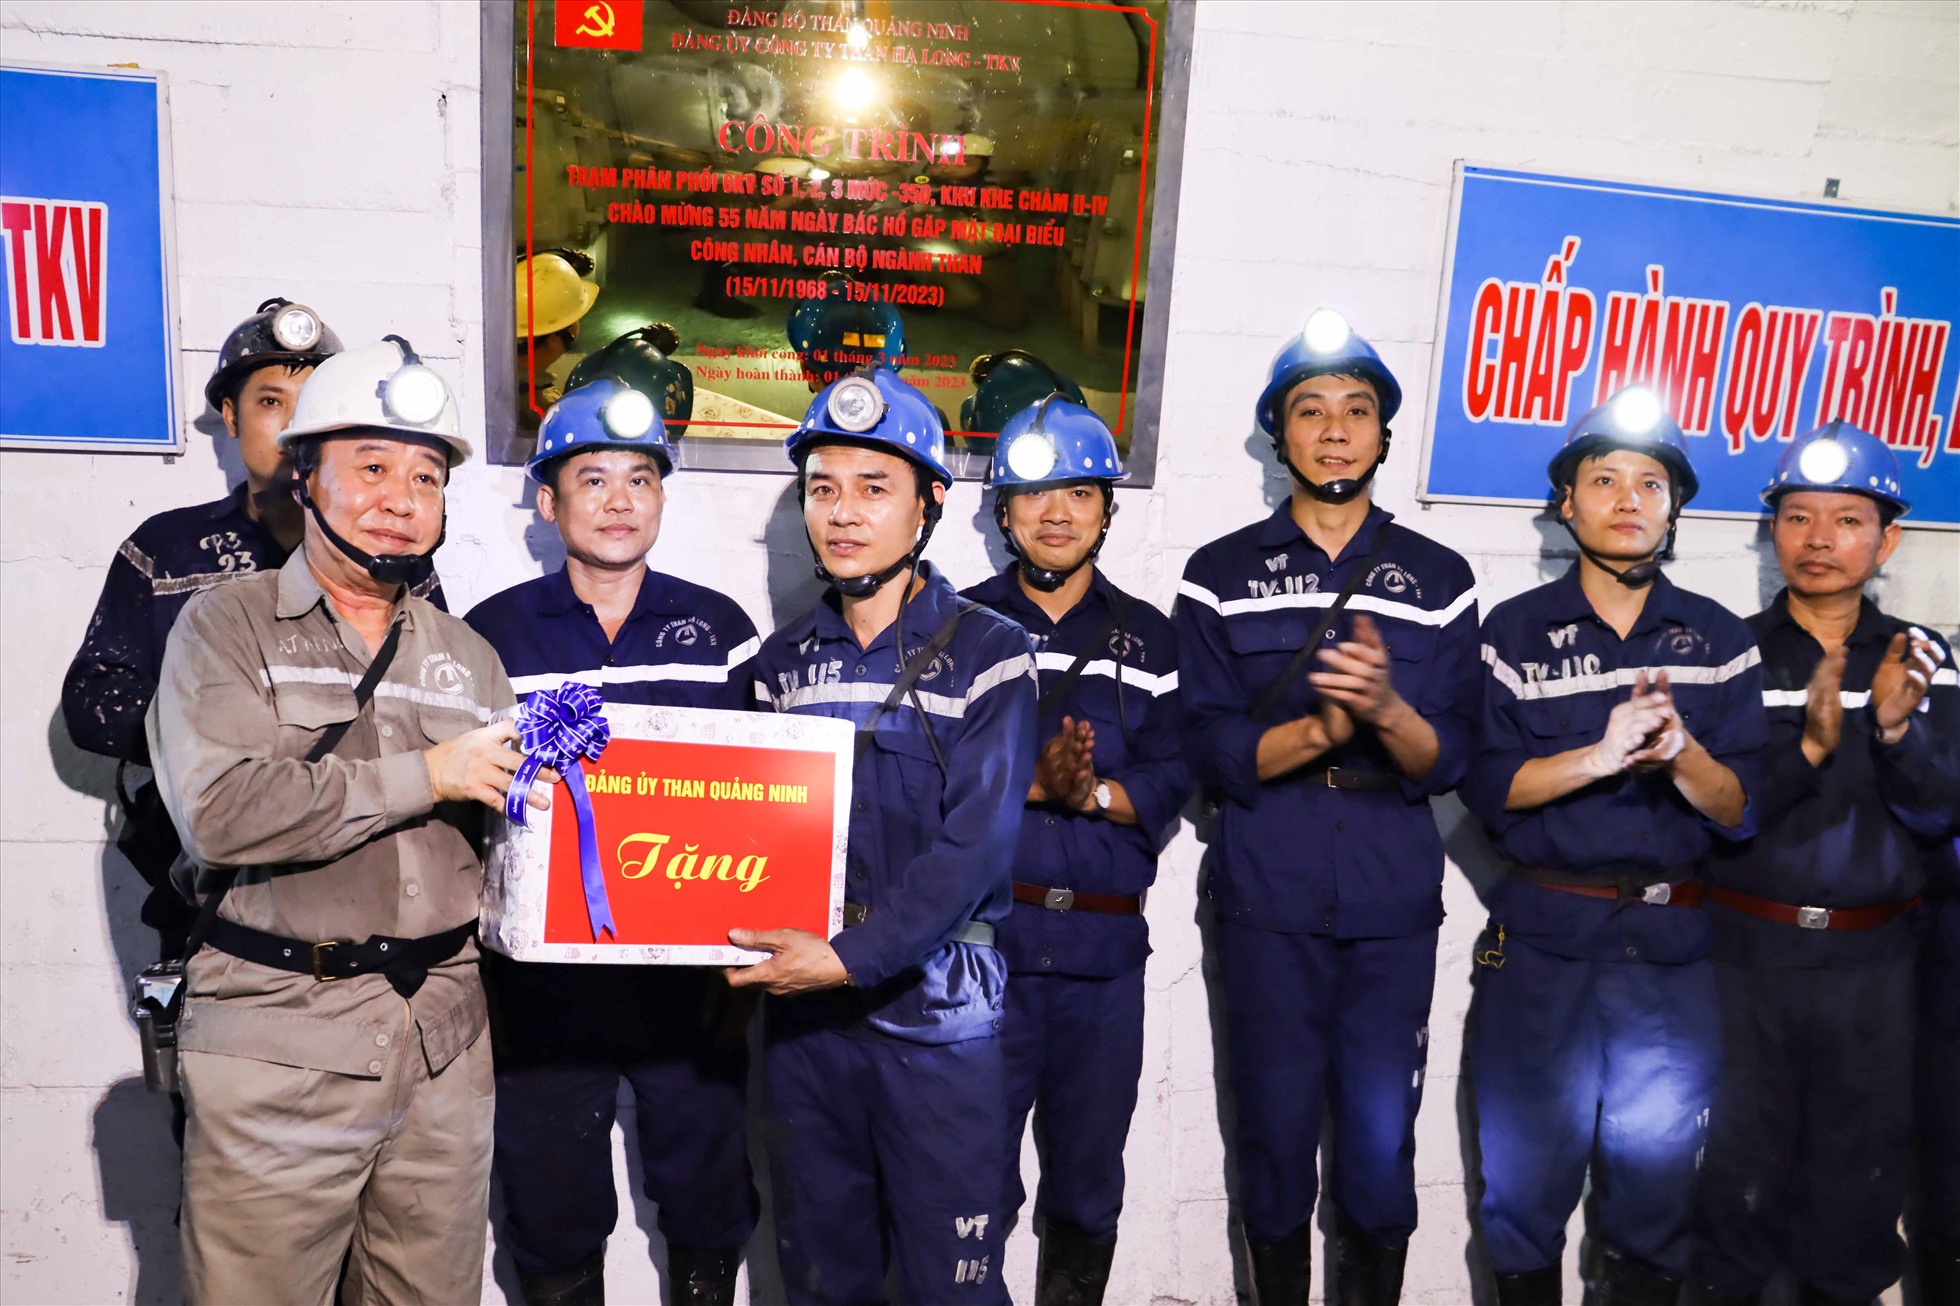 Lãnh đạo Đảng uỷ Than Quảng Ninh và các đại biểu thực hiện nghi lễ gắn biển công trình. Ảnh: Công ty Than Hạ Long.